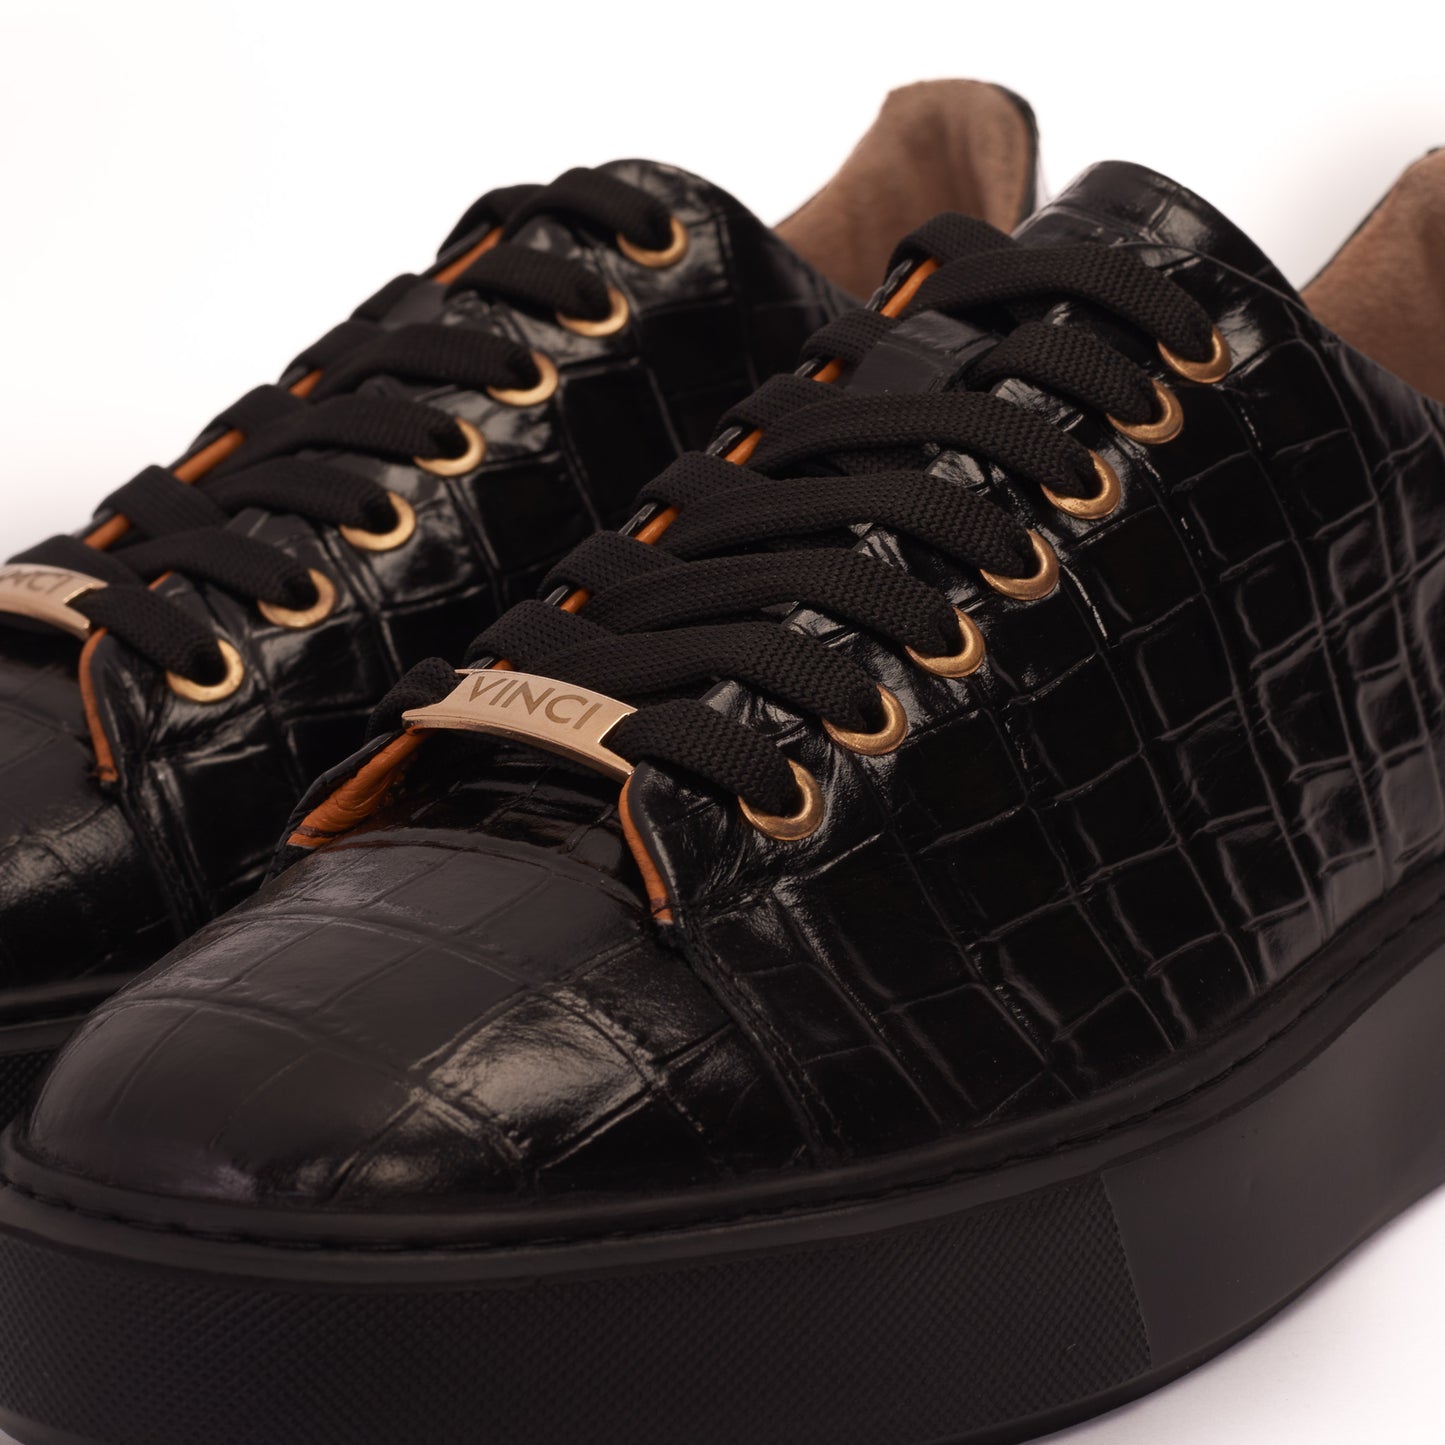 The Dublin Black Leather Men Sneaker